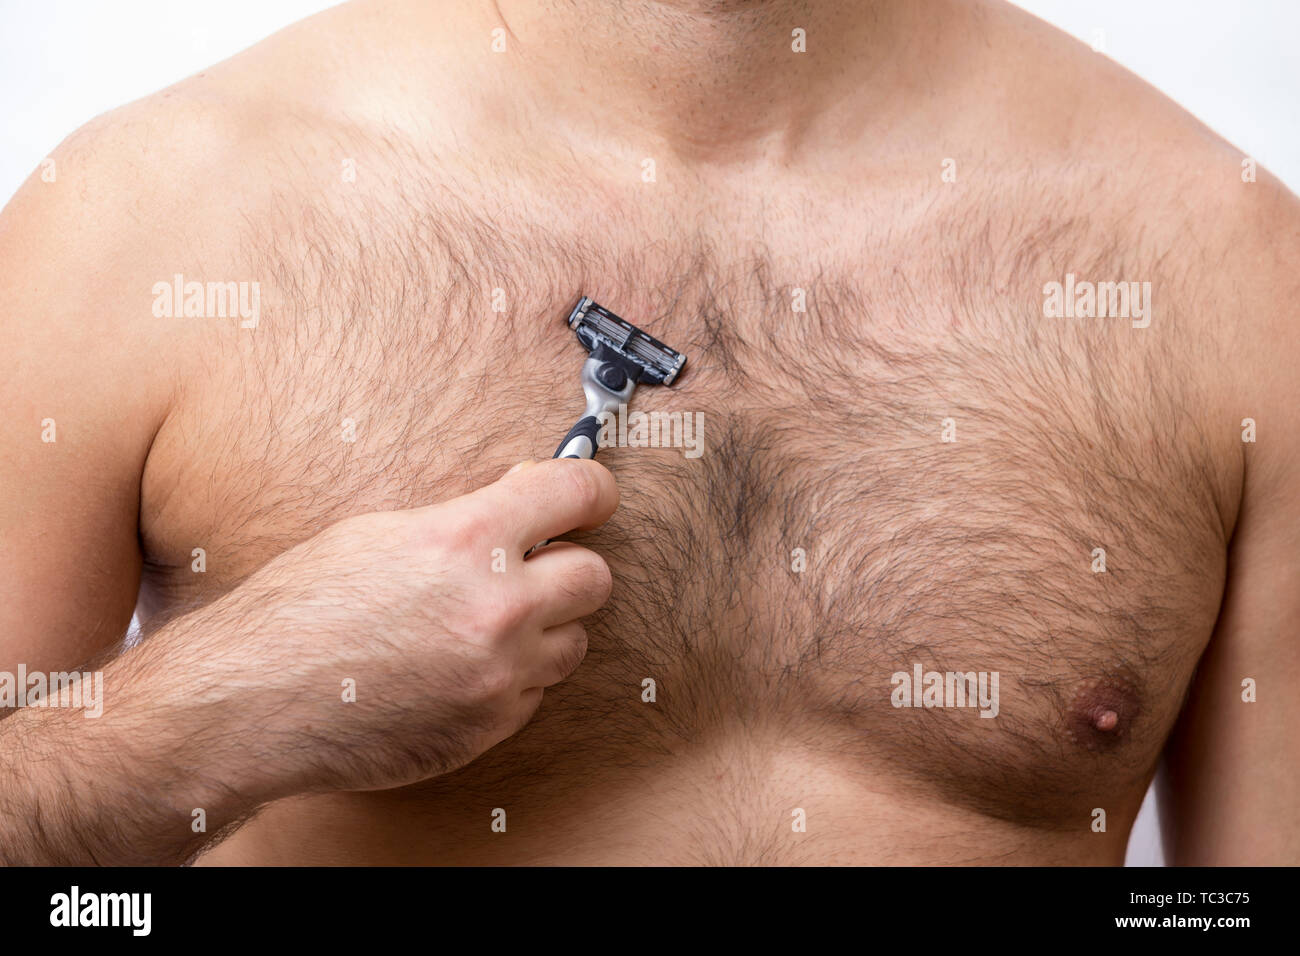 можно ли брить волосы на груди у мужчин (120) фото